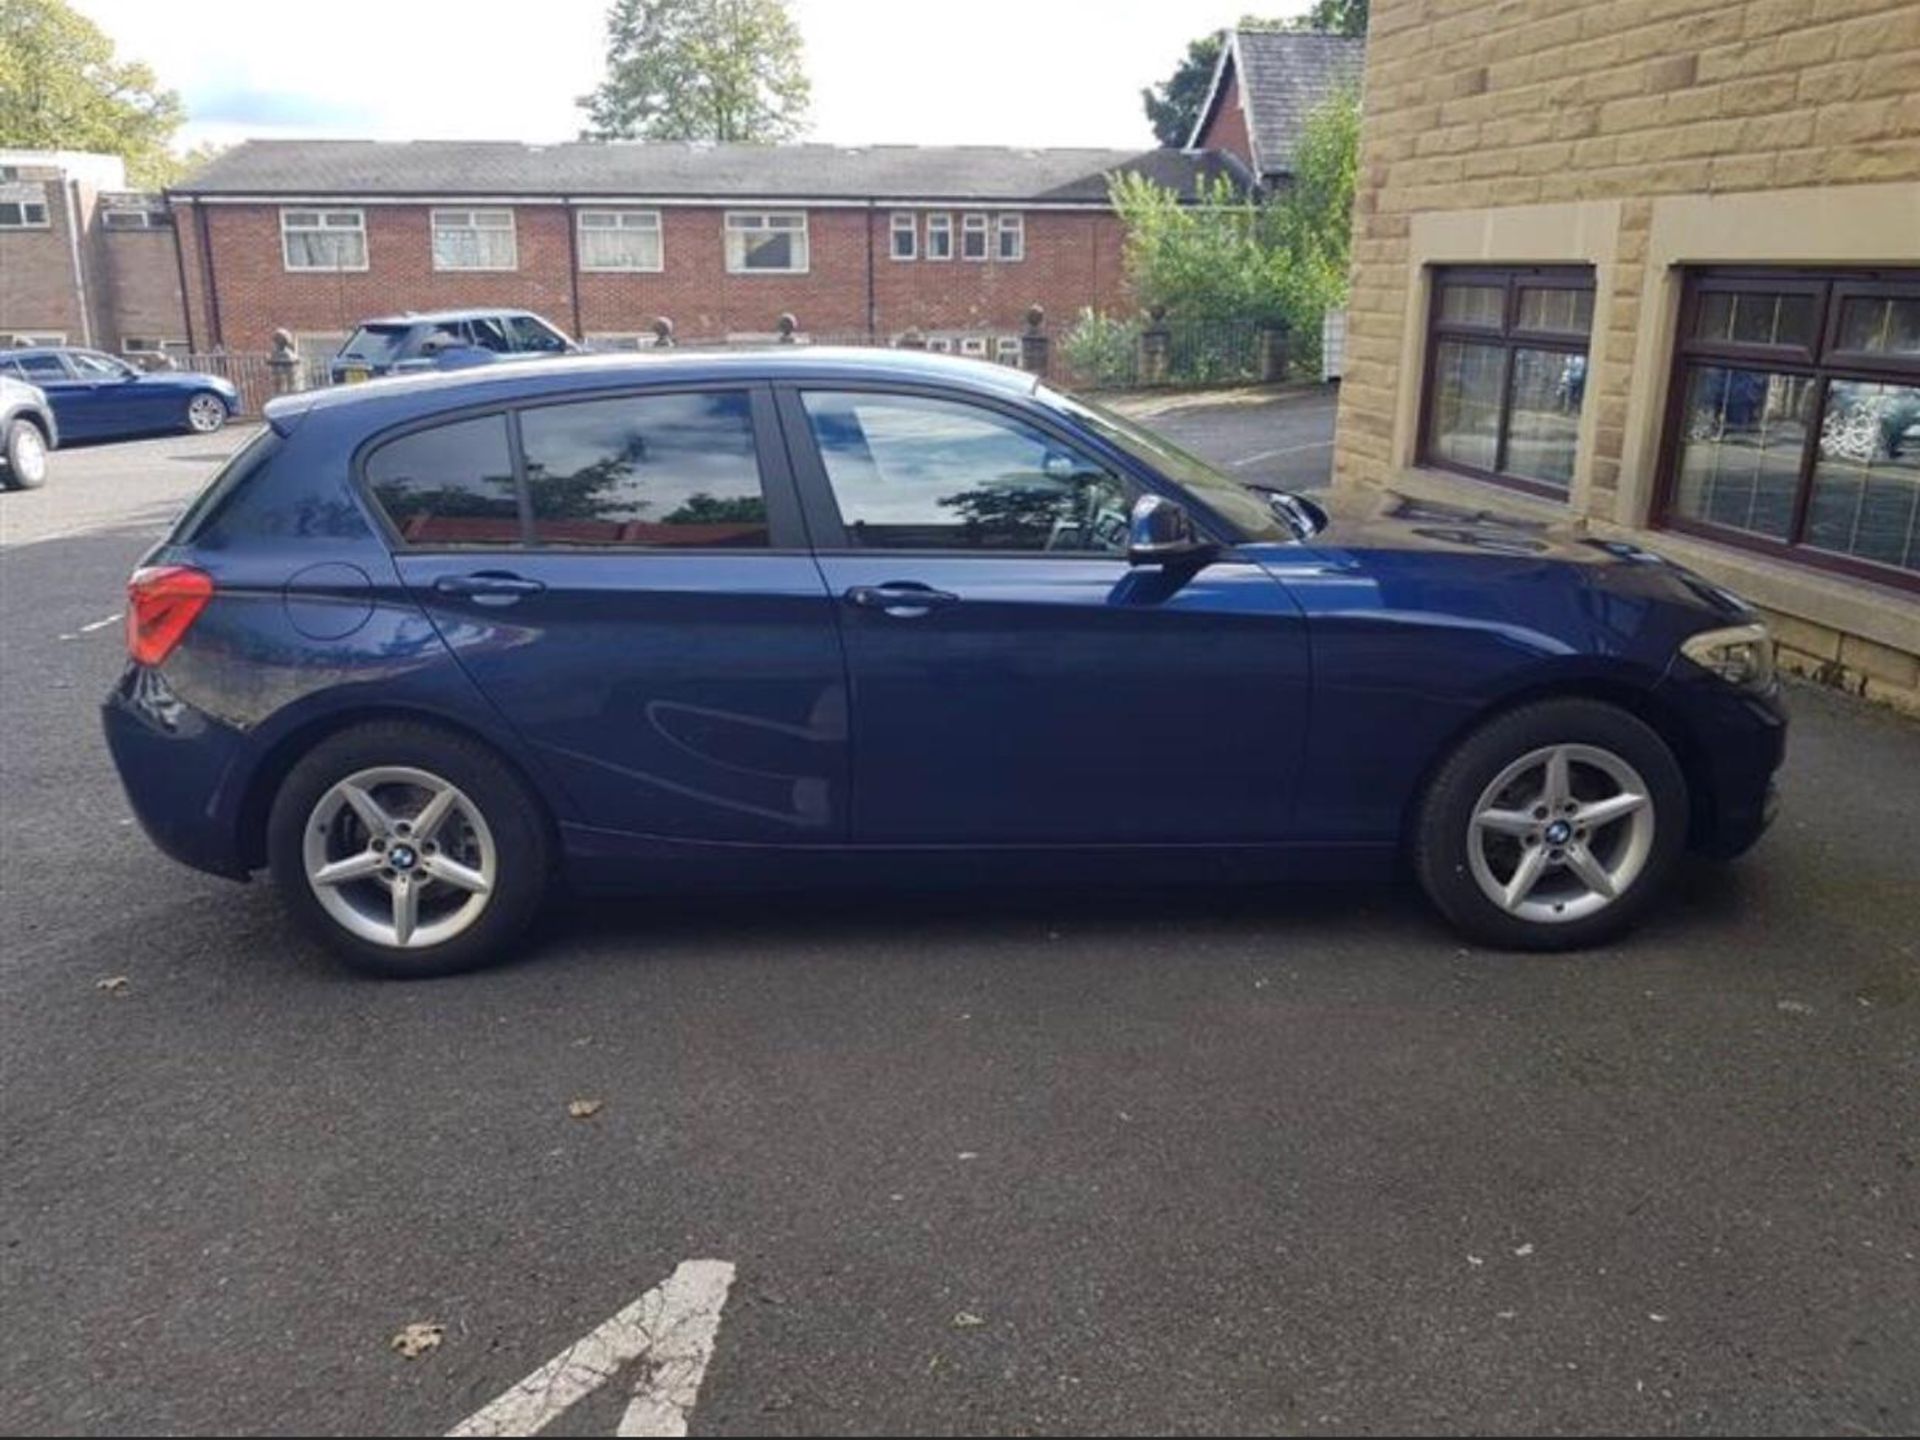 2018/67 REG BMW 118D SE AUTOMATIC BLUE DIESEL 5 DOOR HATCHBACK, SHOWING 0 FORMER KEEPERS *NO VAT* - Image 8 of 18